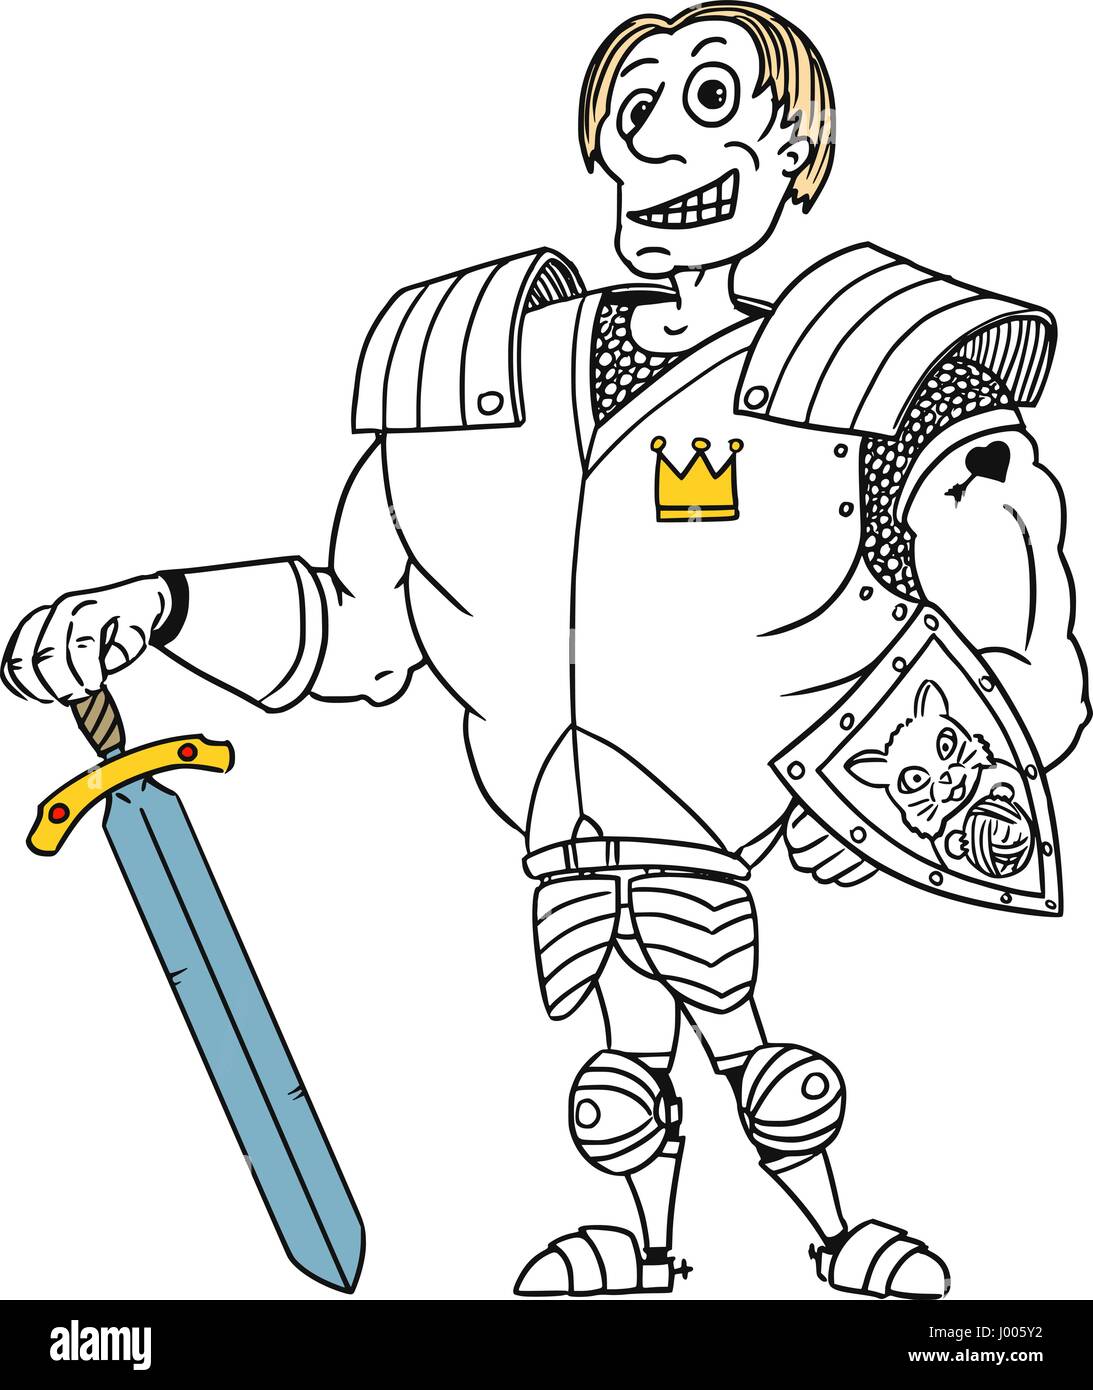 Cartoon vector old royal médiéval fantasy Prince Charmant héros chevalier avec armure, épée, bouclier et sourire Illustration de Vecteur